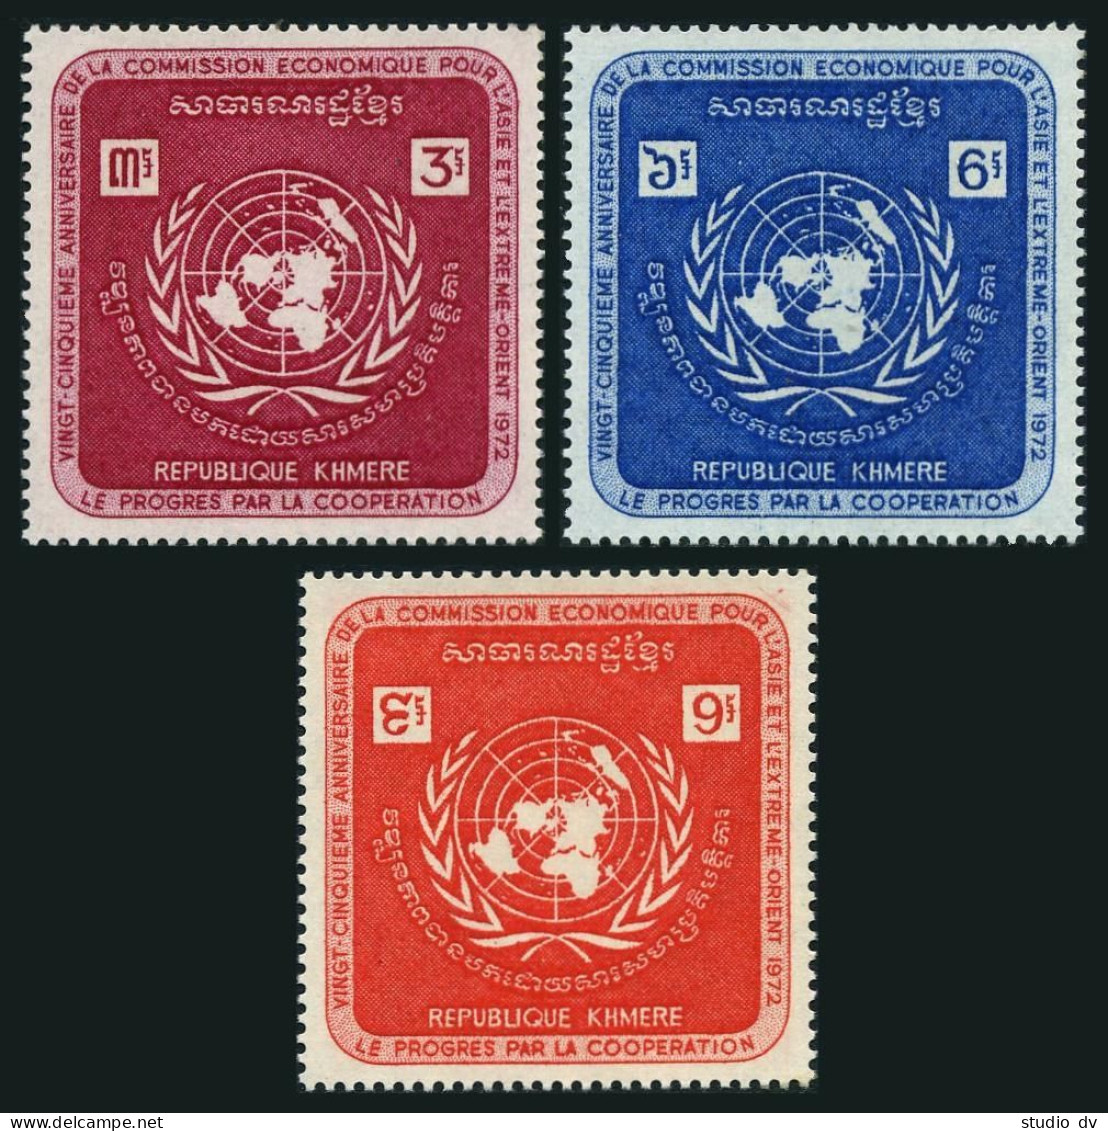 Cambodia 278-280,MNH.Michel 321-323. UN Economic Commission ECAFE,1972. - Cambogia